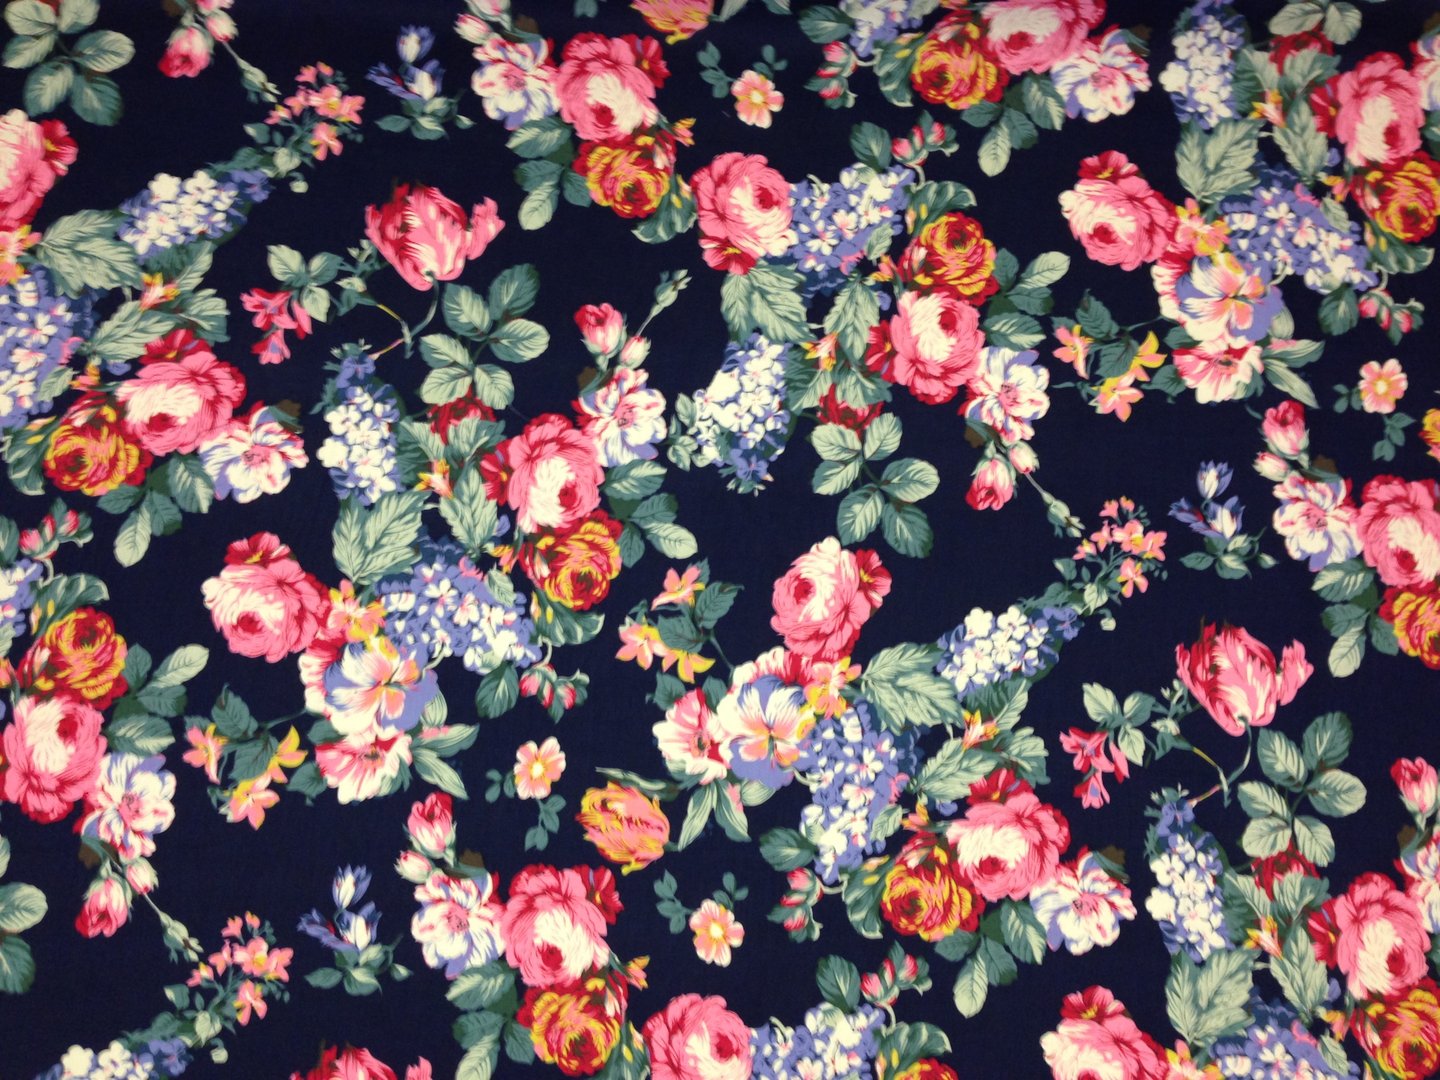 floral wallpaper,pattern,pink,flower,floral design,textile